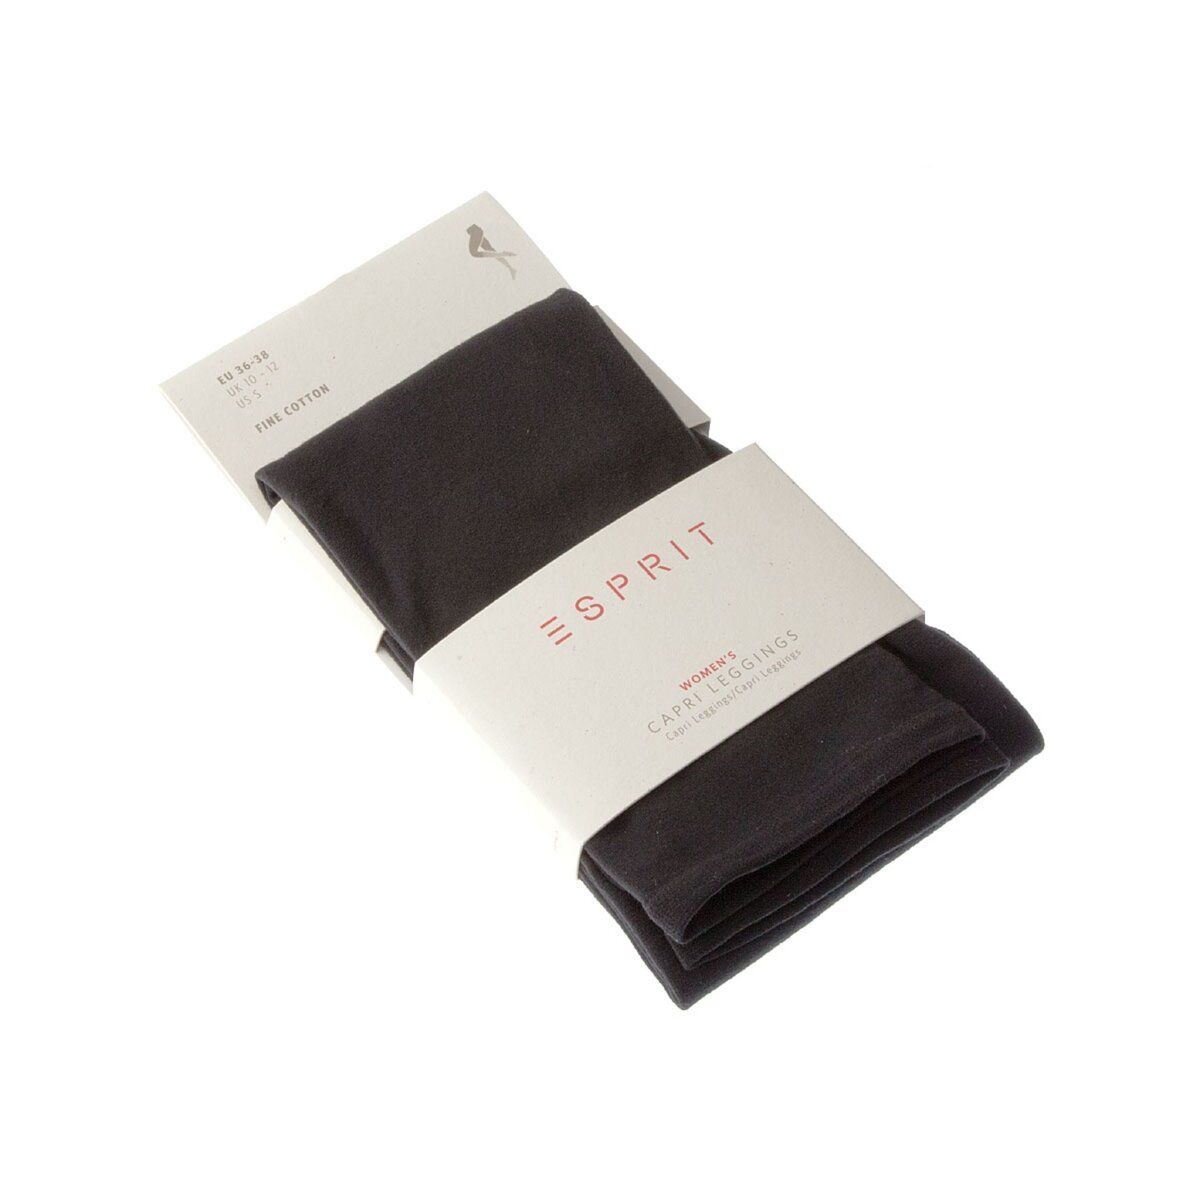 Esprit Legging fin court - 1 paire - Unis - Opaque - Mat - Gousset coton - Coton